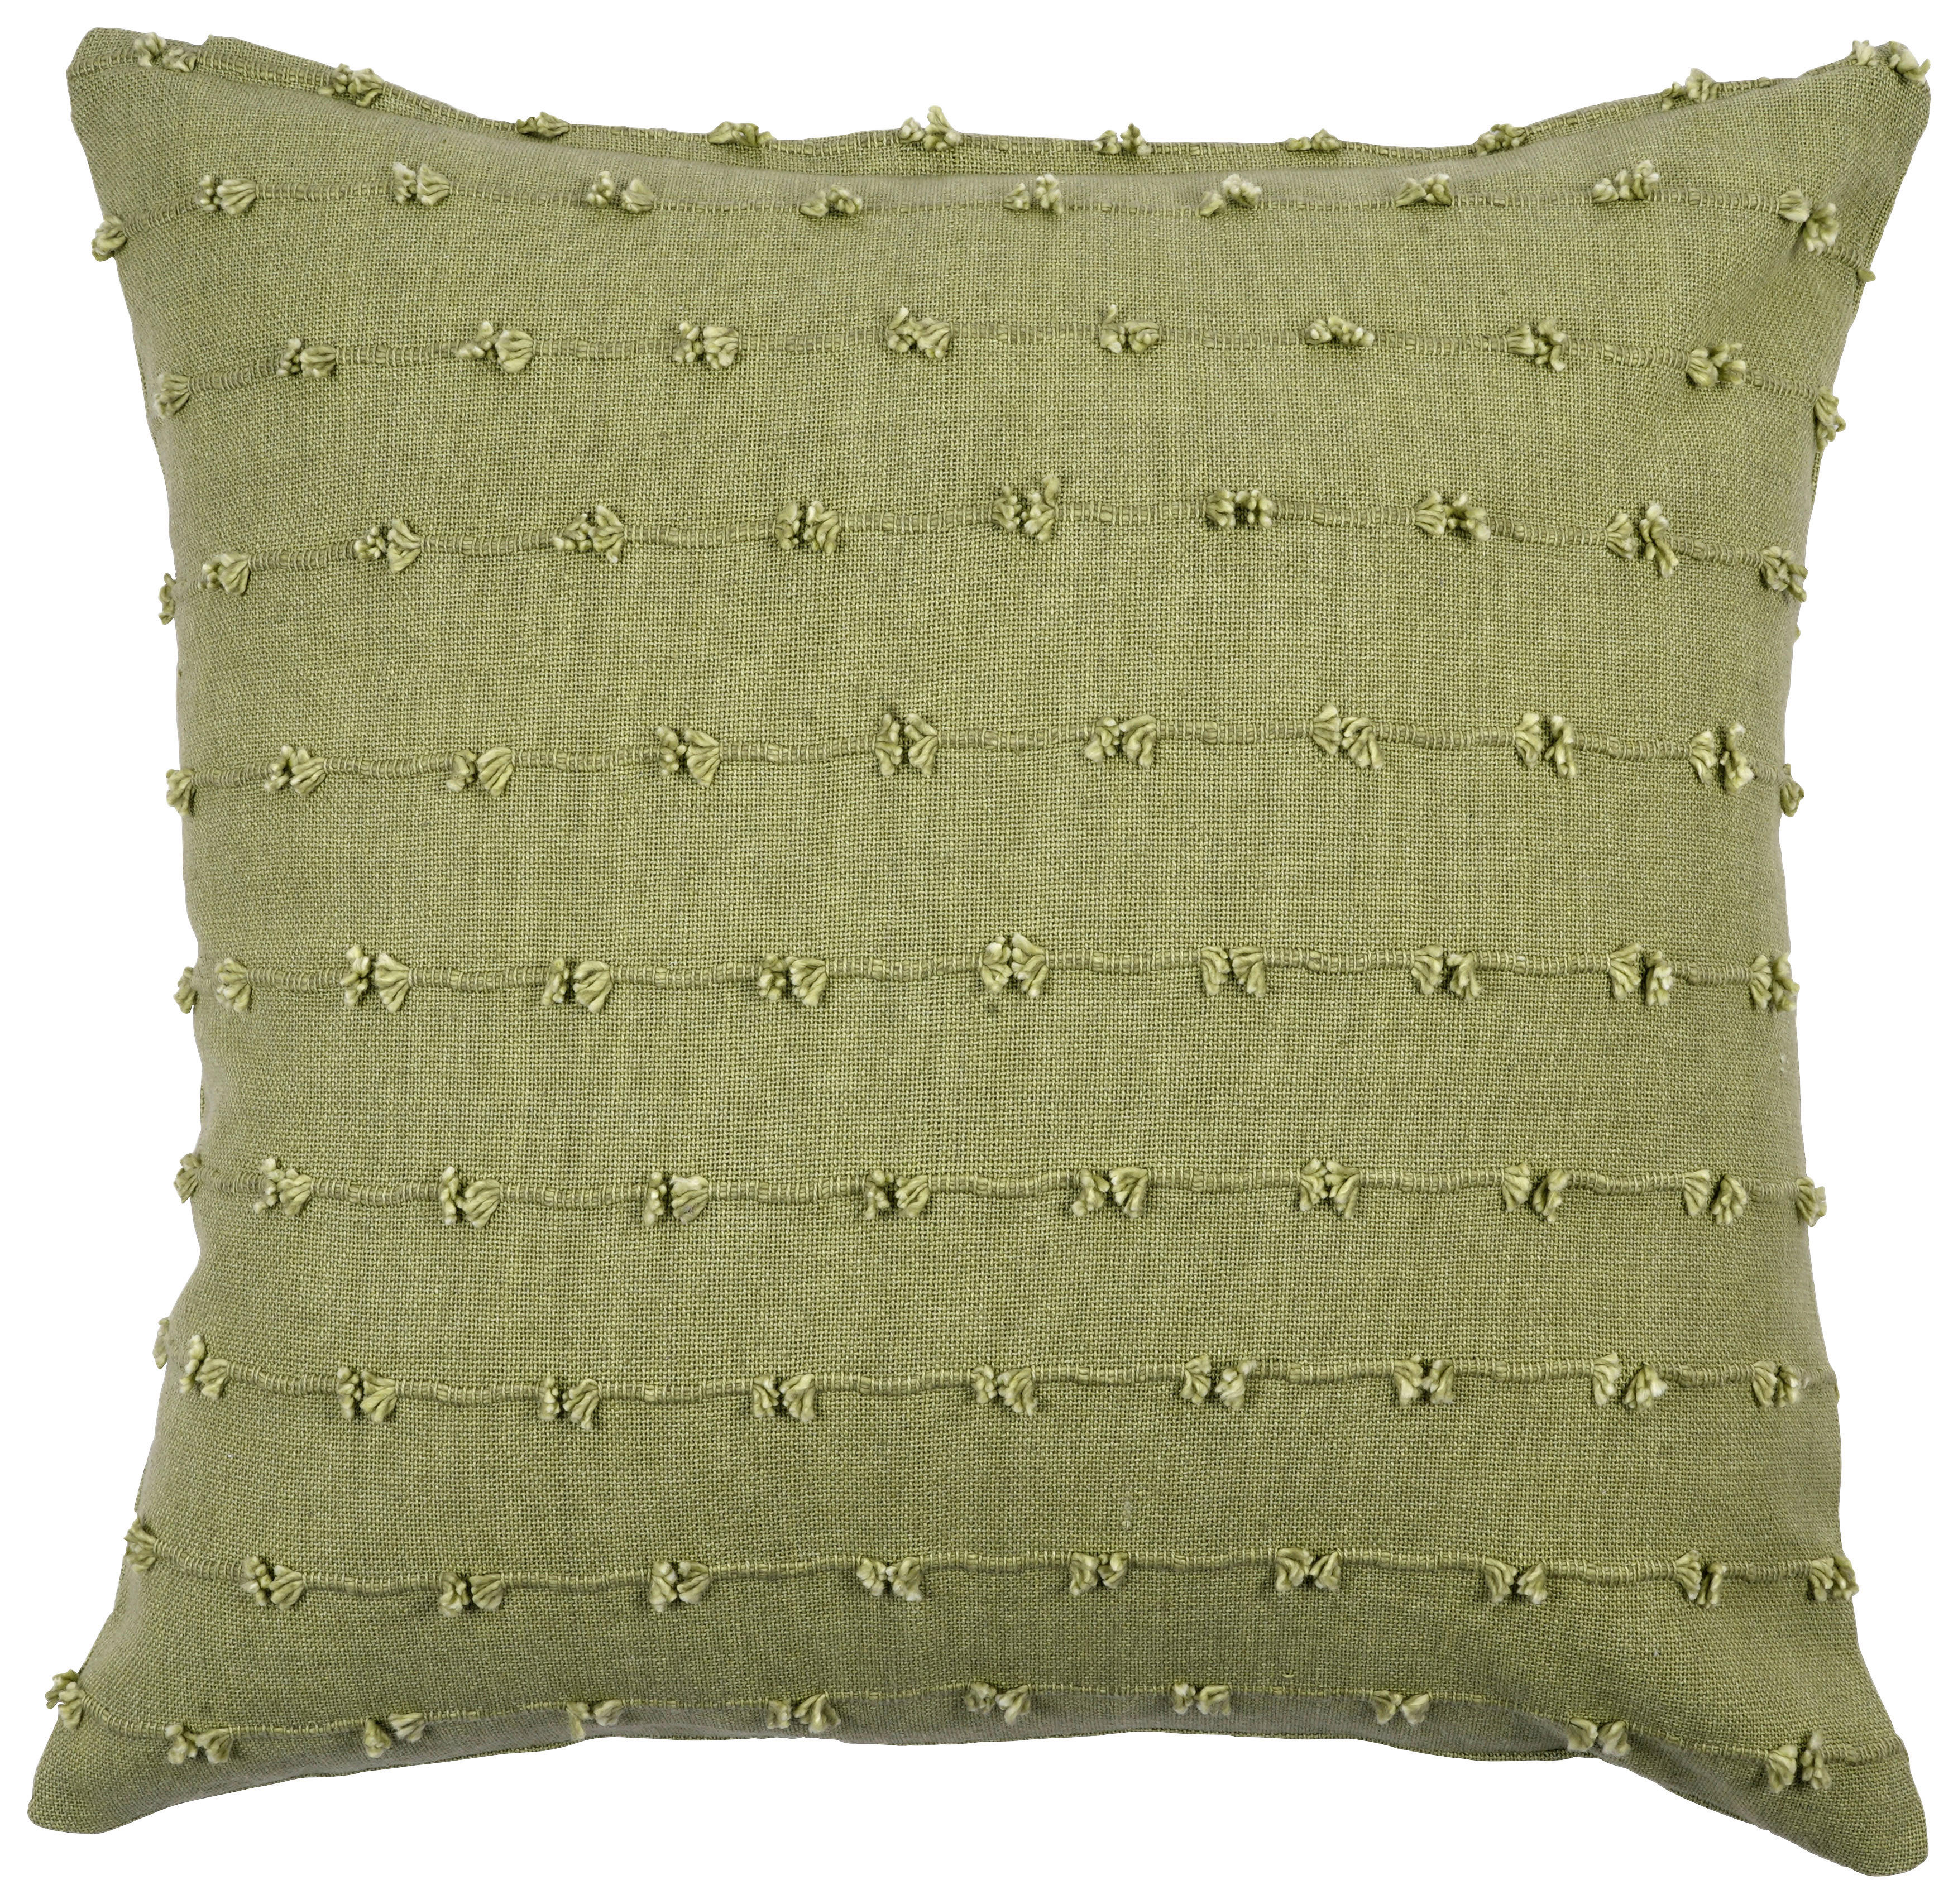 DÍSZPÁRNA 45/45 cm  - zöld, Basics, textil (45/45cm) - Esposa